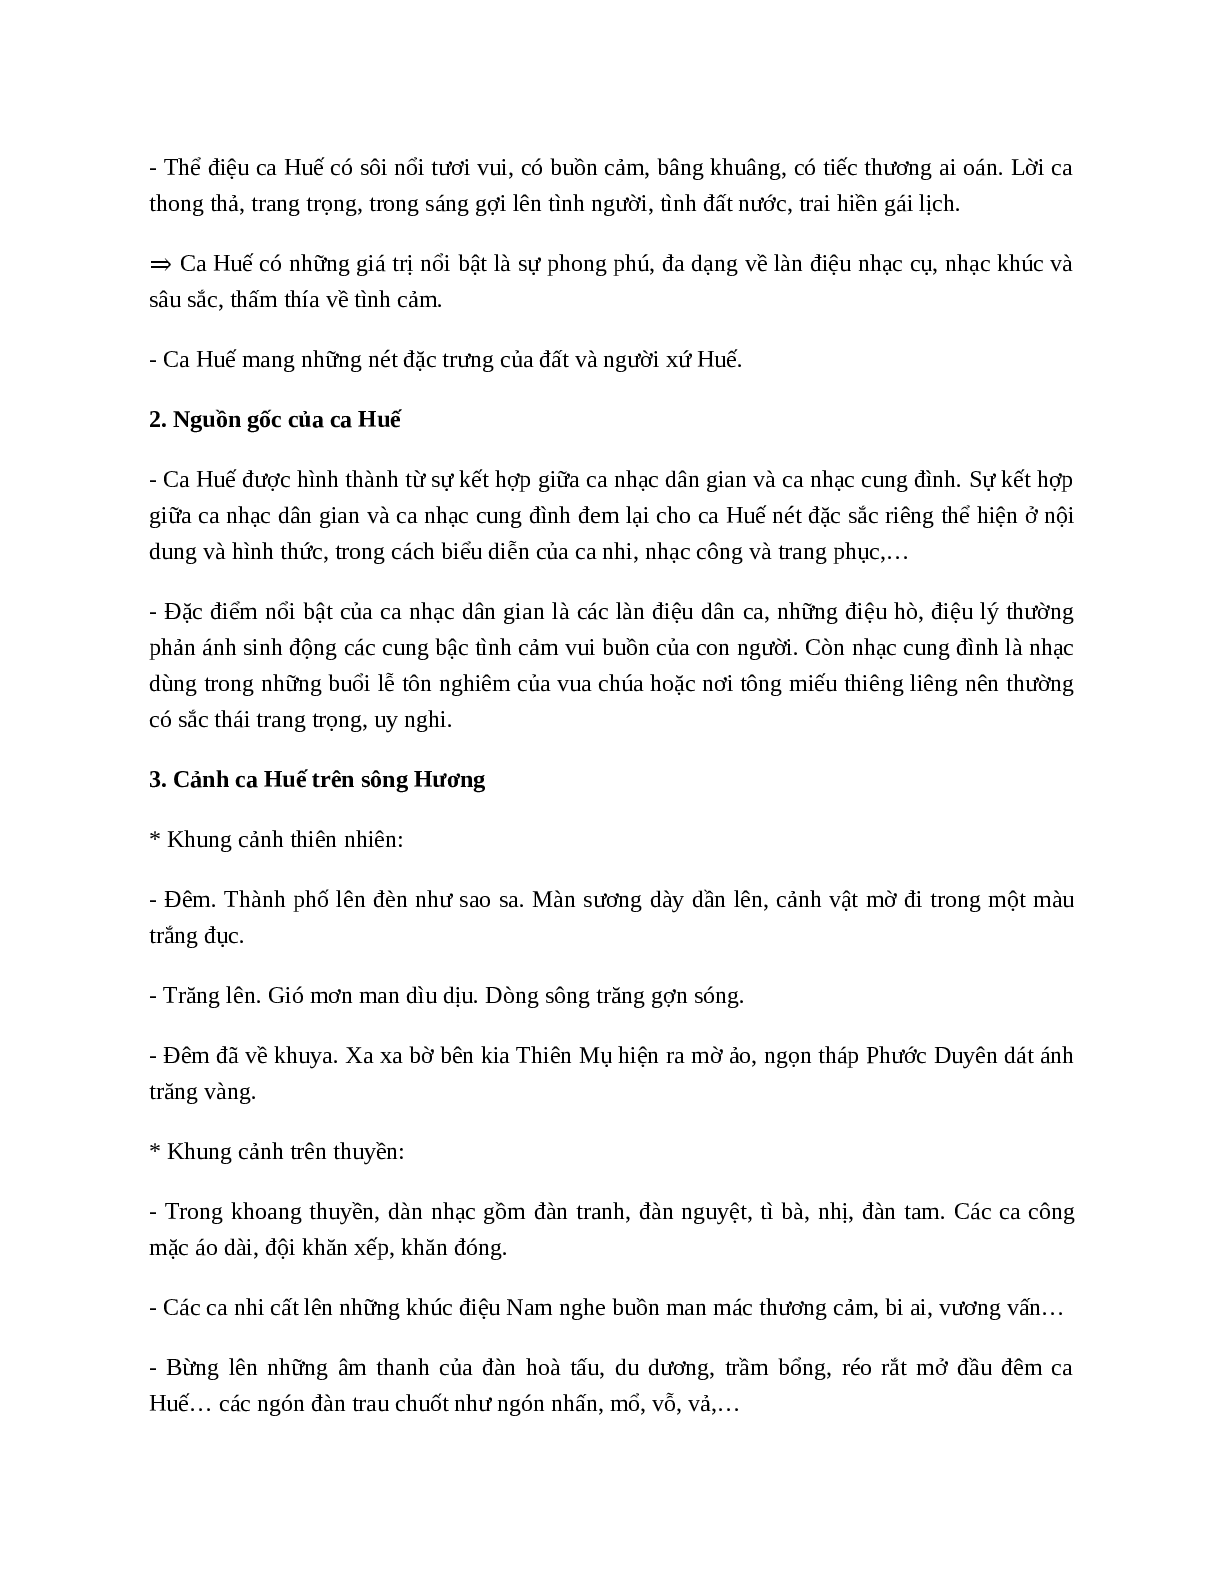 Ca Huế trên sông Hương - Tác giả tác phẩm - Ngữ văn lớp 7 (trang 3)